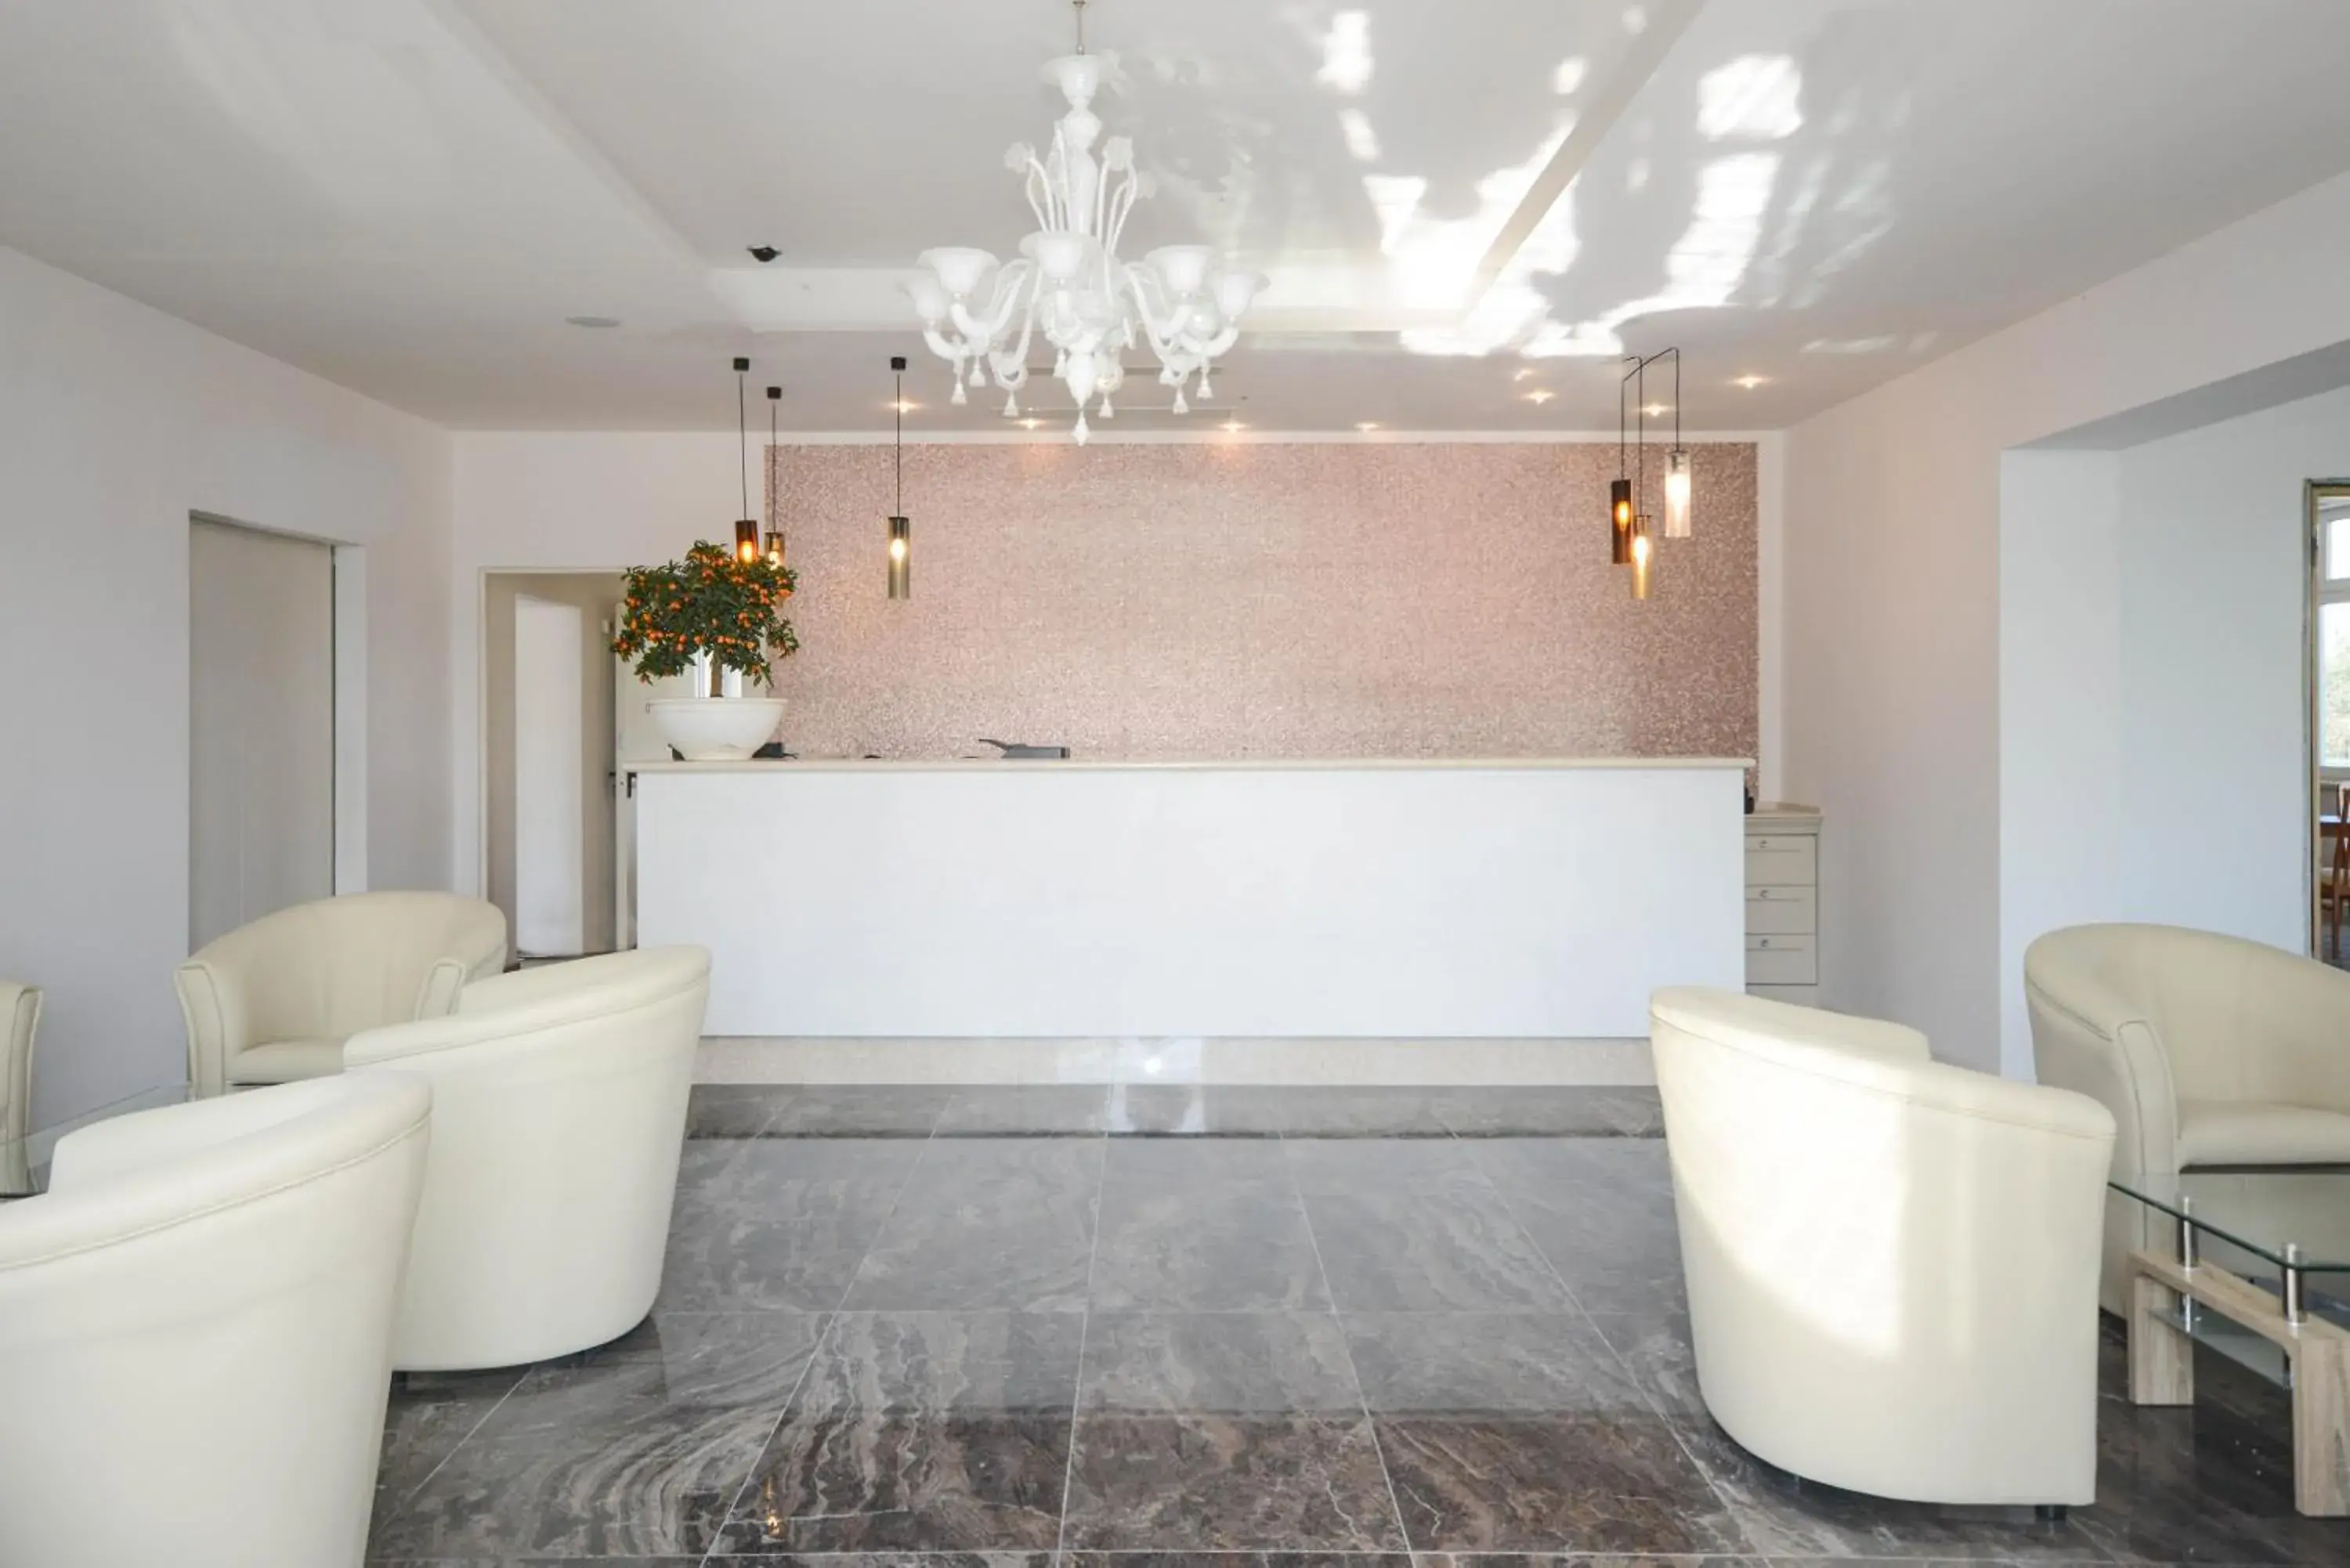 Lobby or reception, Bathroom in Villa Paradiso Suite